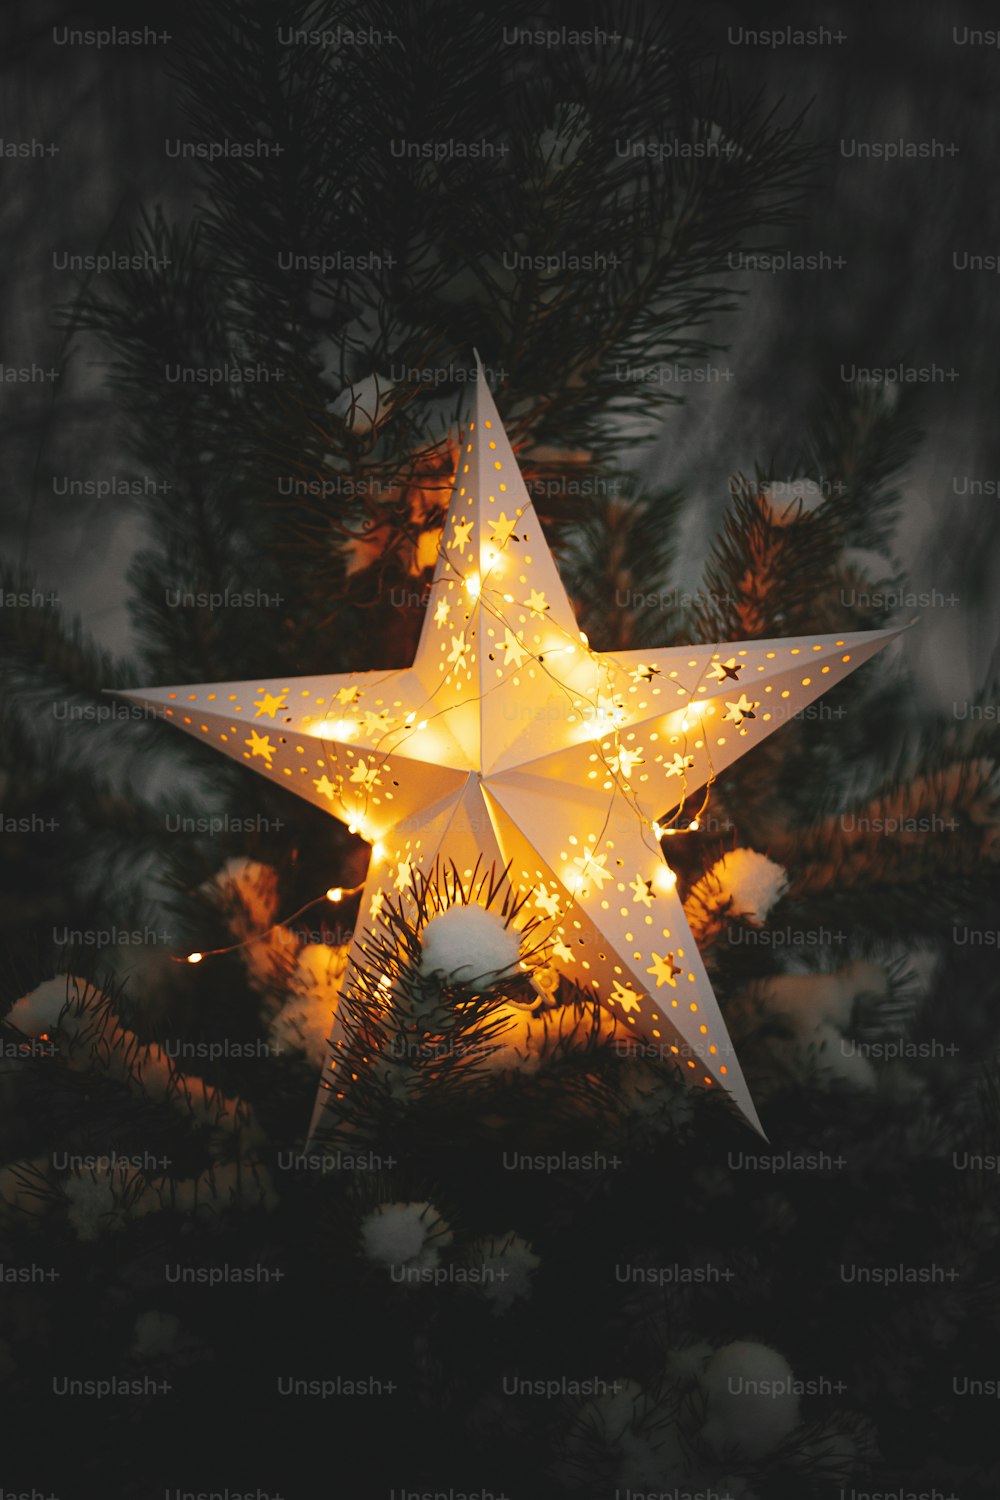 Gran estrella de Navidad que brilla en el pino nevado en el parque de invierno por la noche, de cerca. Tiempo de invierno mágico atmosférico. Estrella de navidad iluminada por la noche. ¡Feliz Navidad! Milagro navideño